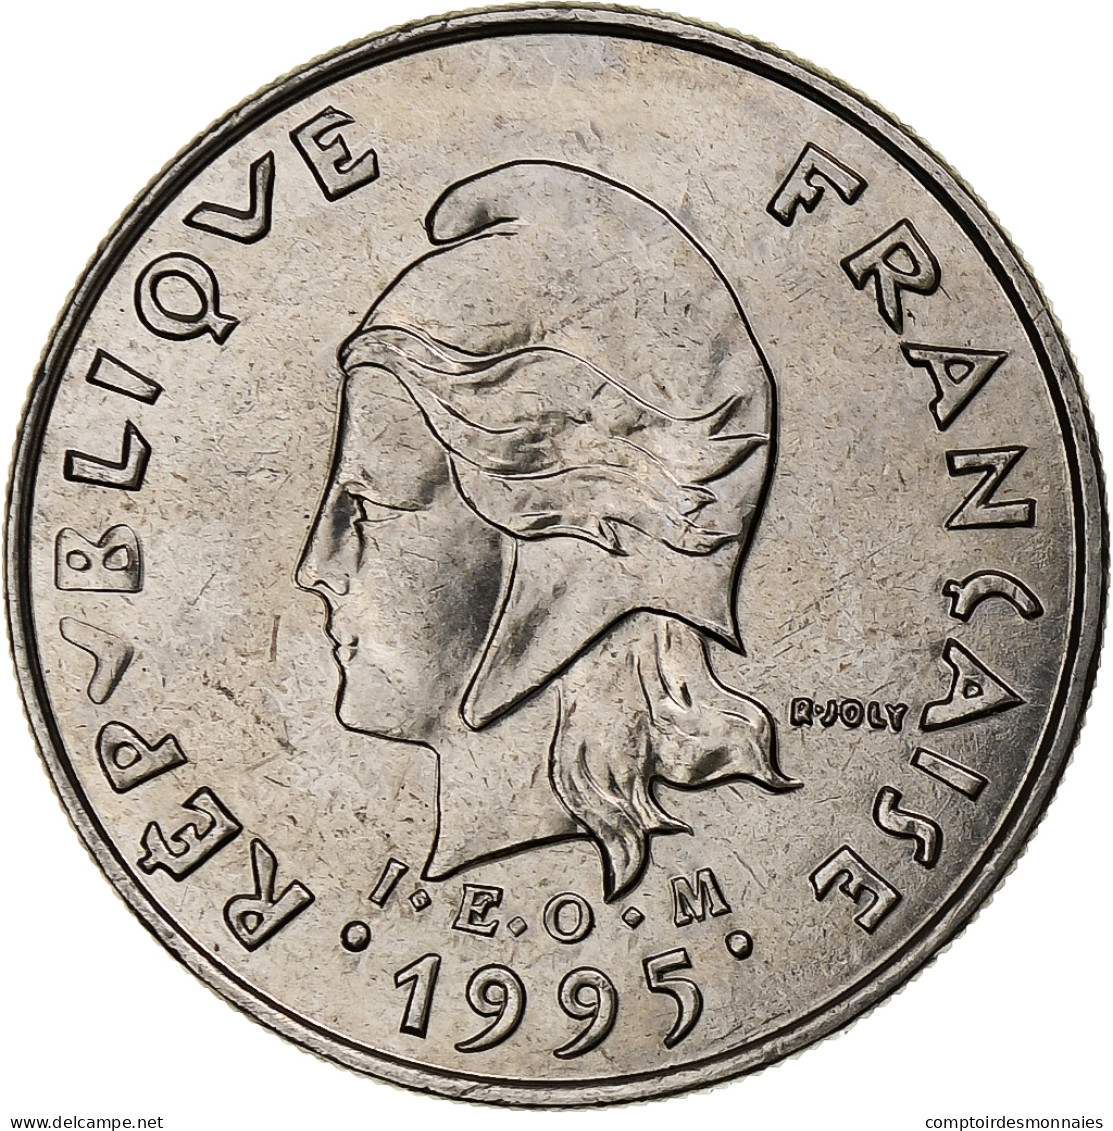 Polynésie Française, 10 Francs, 1995, Pessac, I.E.O.M., Nickel, SPL, KM:8 - Polinesia Francesa